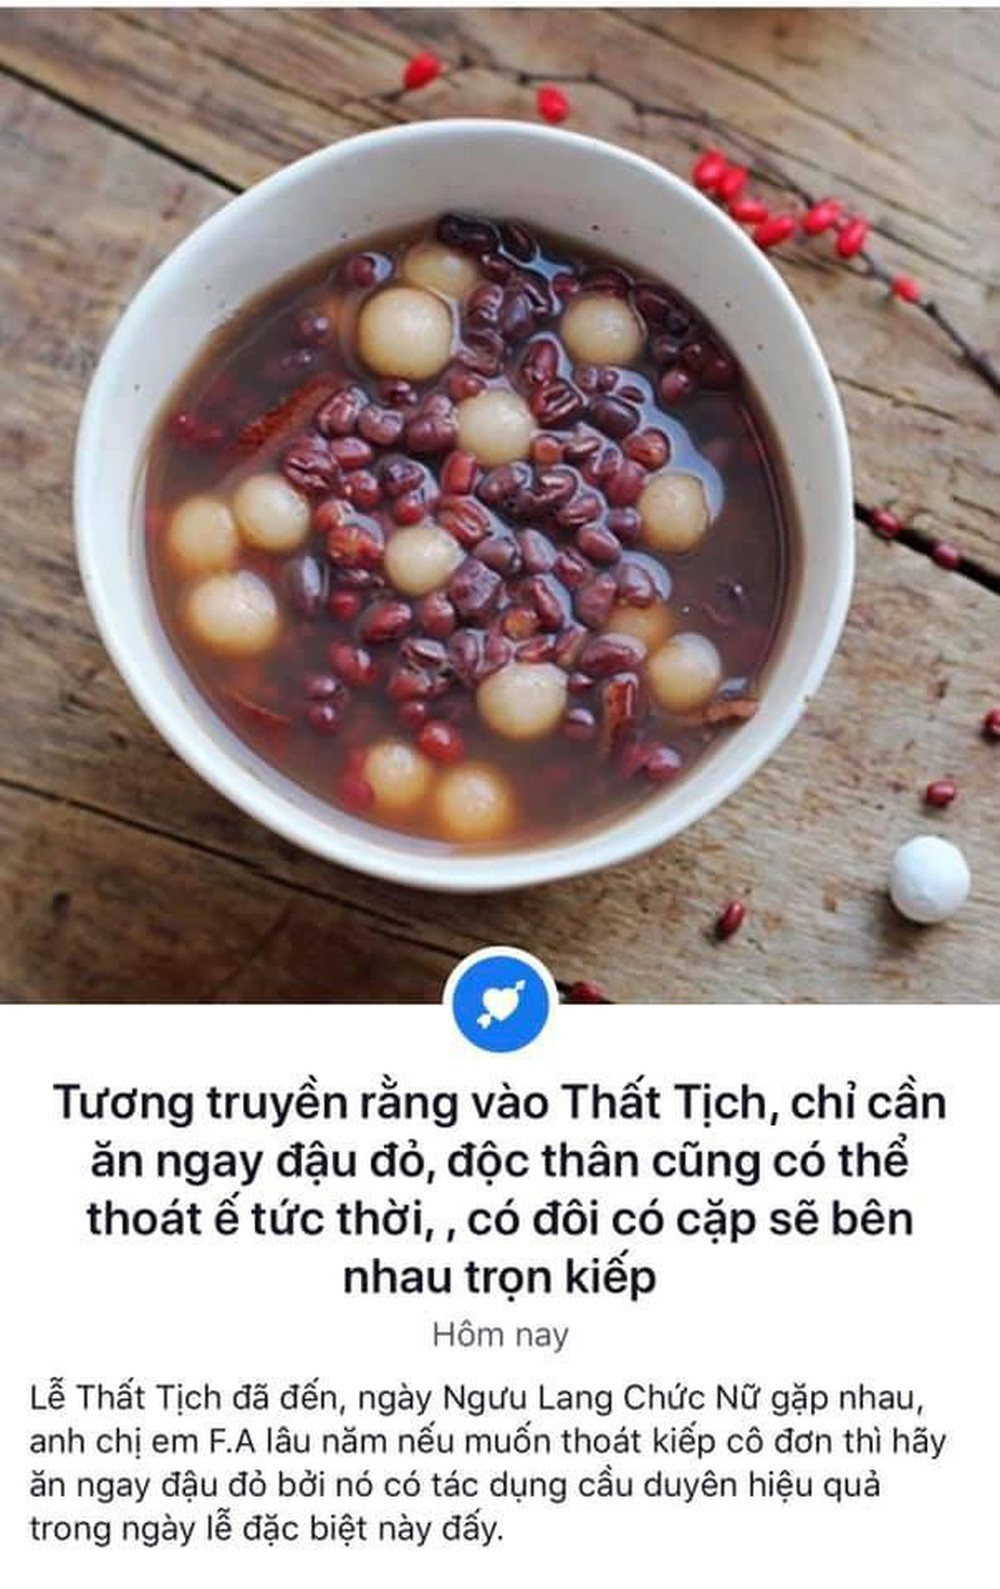  
Niềm tin của hội "ế" Việt Nam (Ảnh chụp màn hình)